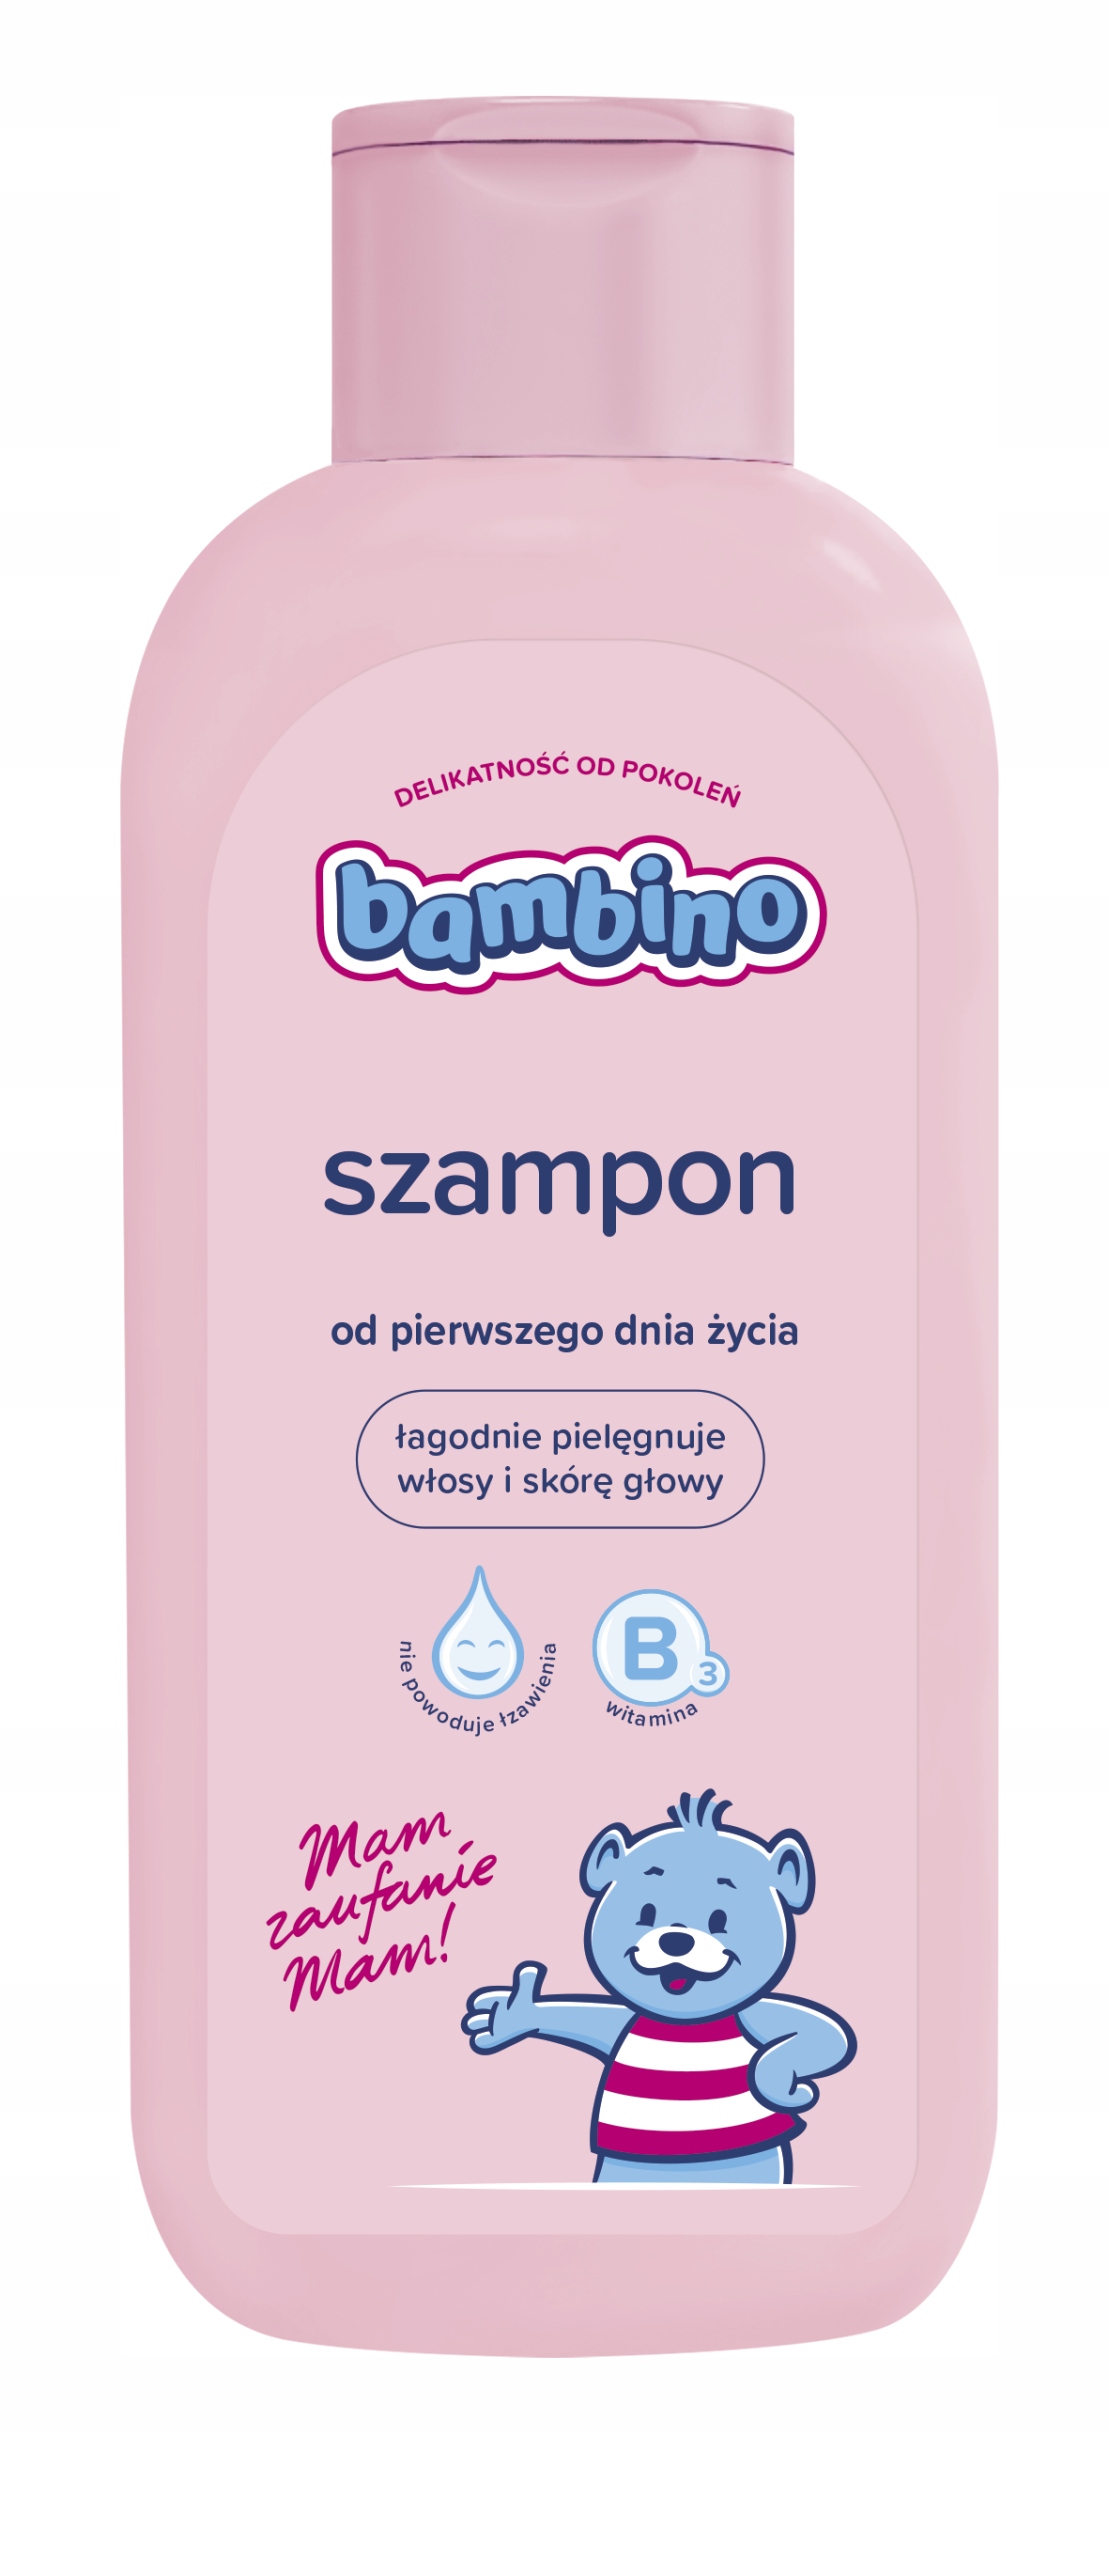 eo laboratorium szampon dla dzieci najtaniej